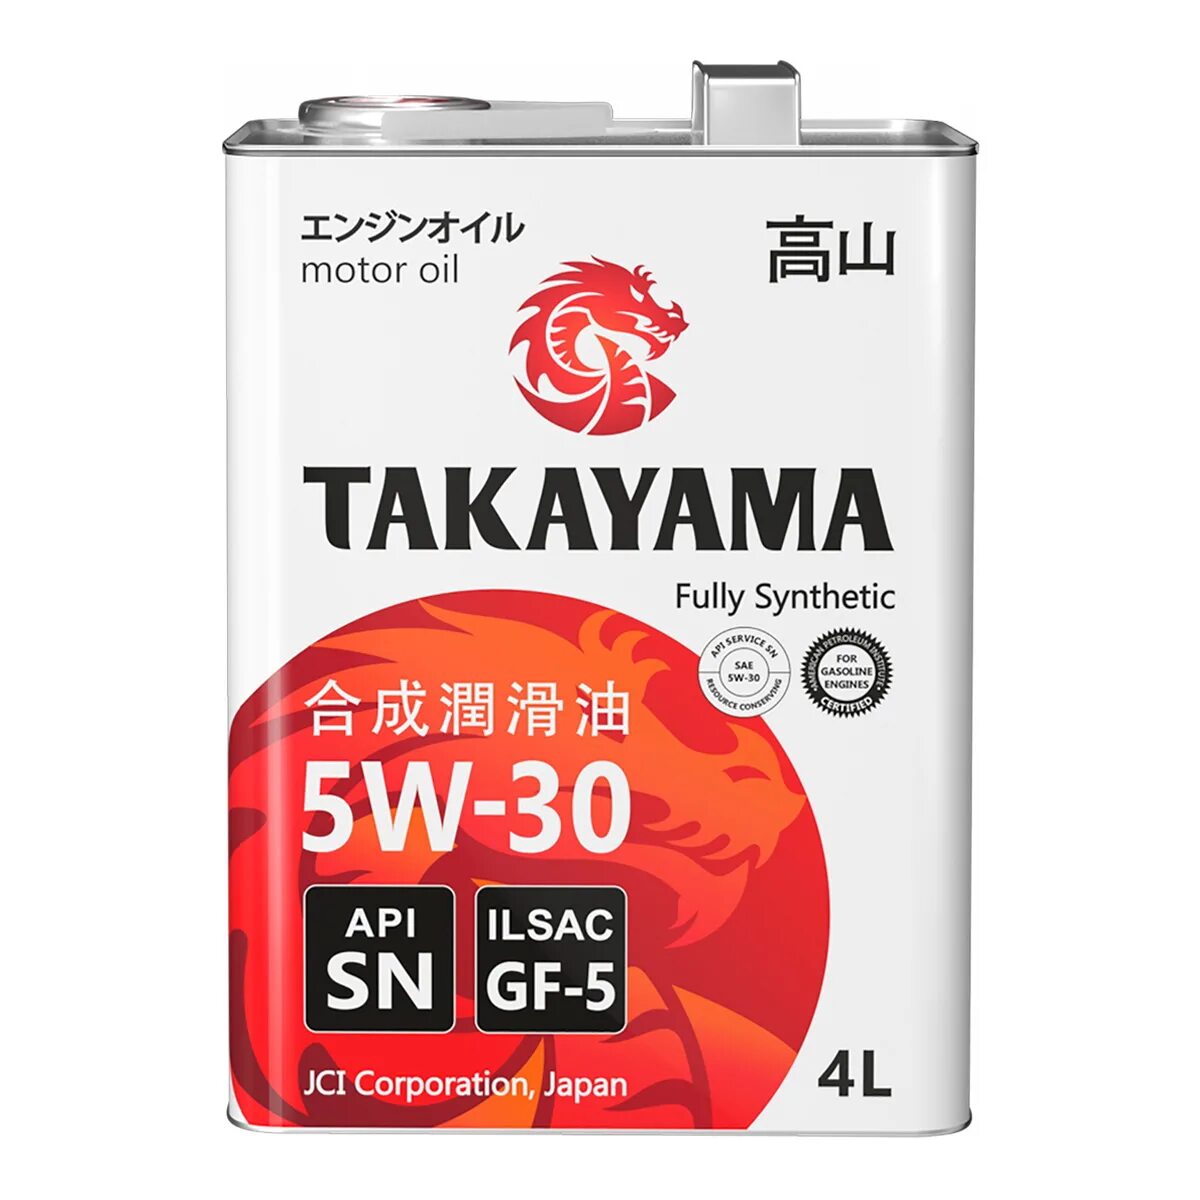 Токояма масло 5w30. Takayama 5w30 SN gf-5. Такаяма 5w30 ILSAC 4л 605043. Takayama SAE 5w-30, ILSAC gf-5, API SN (бочка 200л). Моторное масло Takayama 5w-40 синтетическое 4 л.